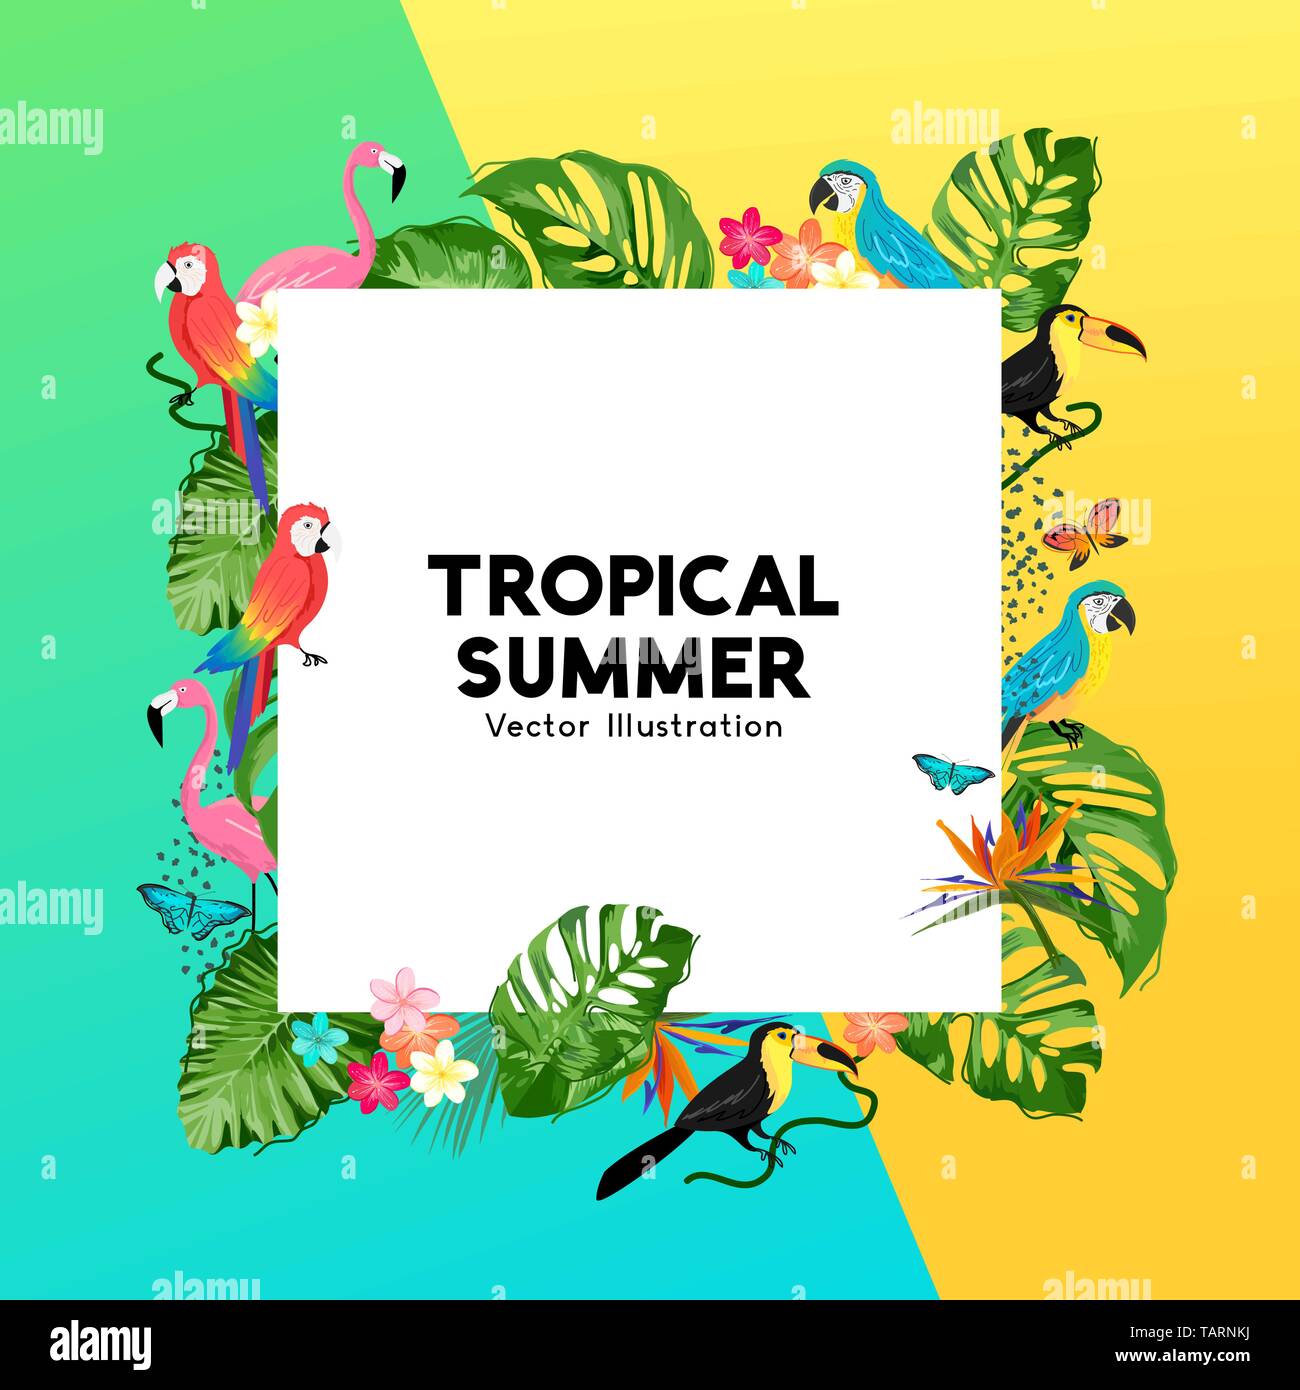 Sommer tropische Grenze Design mit Palmblättern, Dschungel, Vögel und Blumen. Vector Illustration Stock Vektor